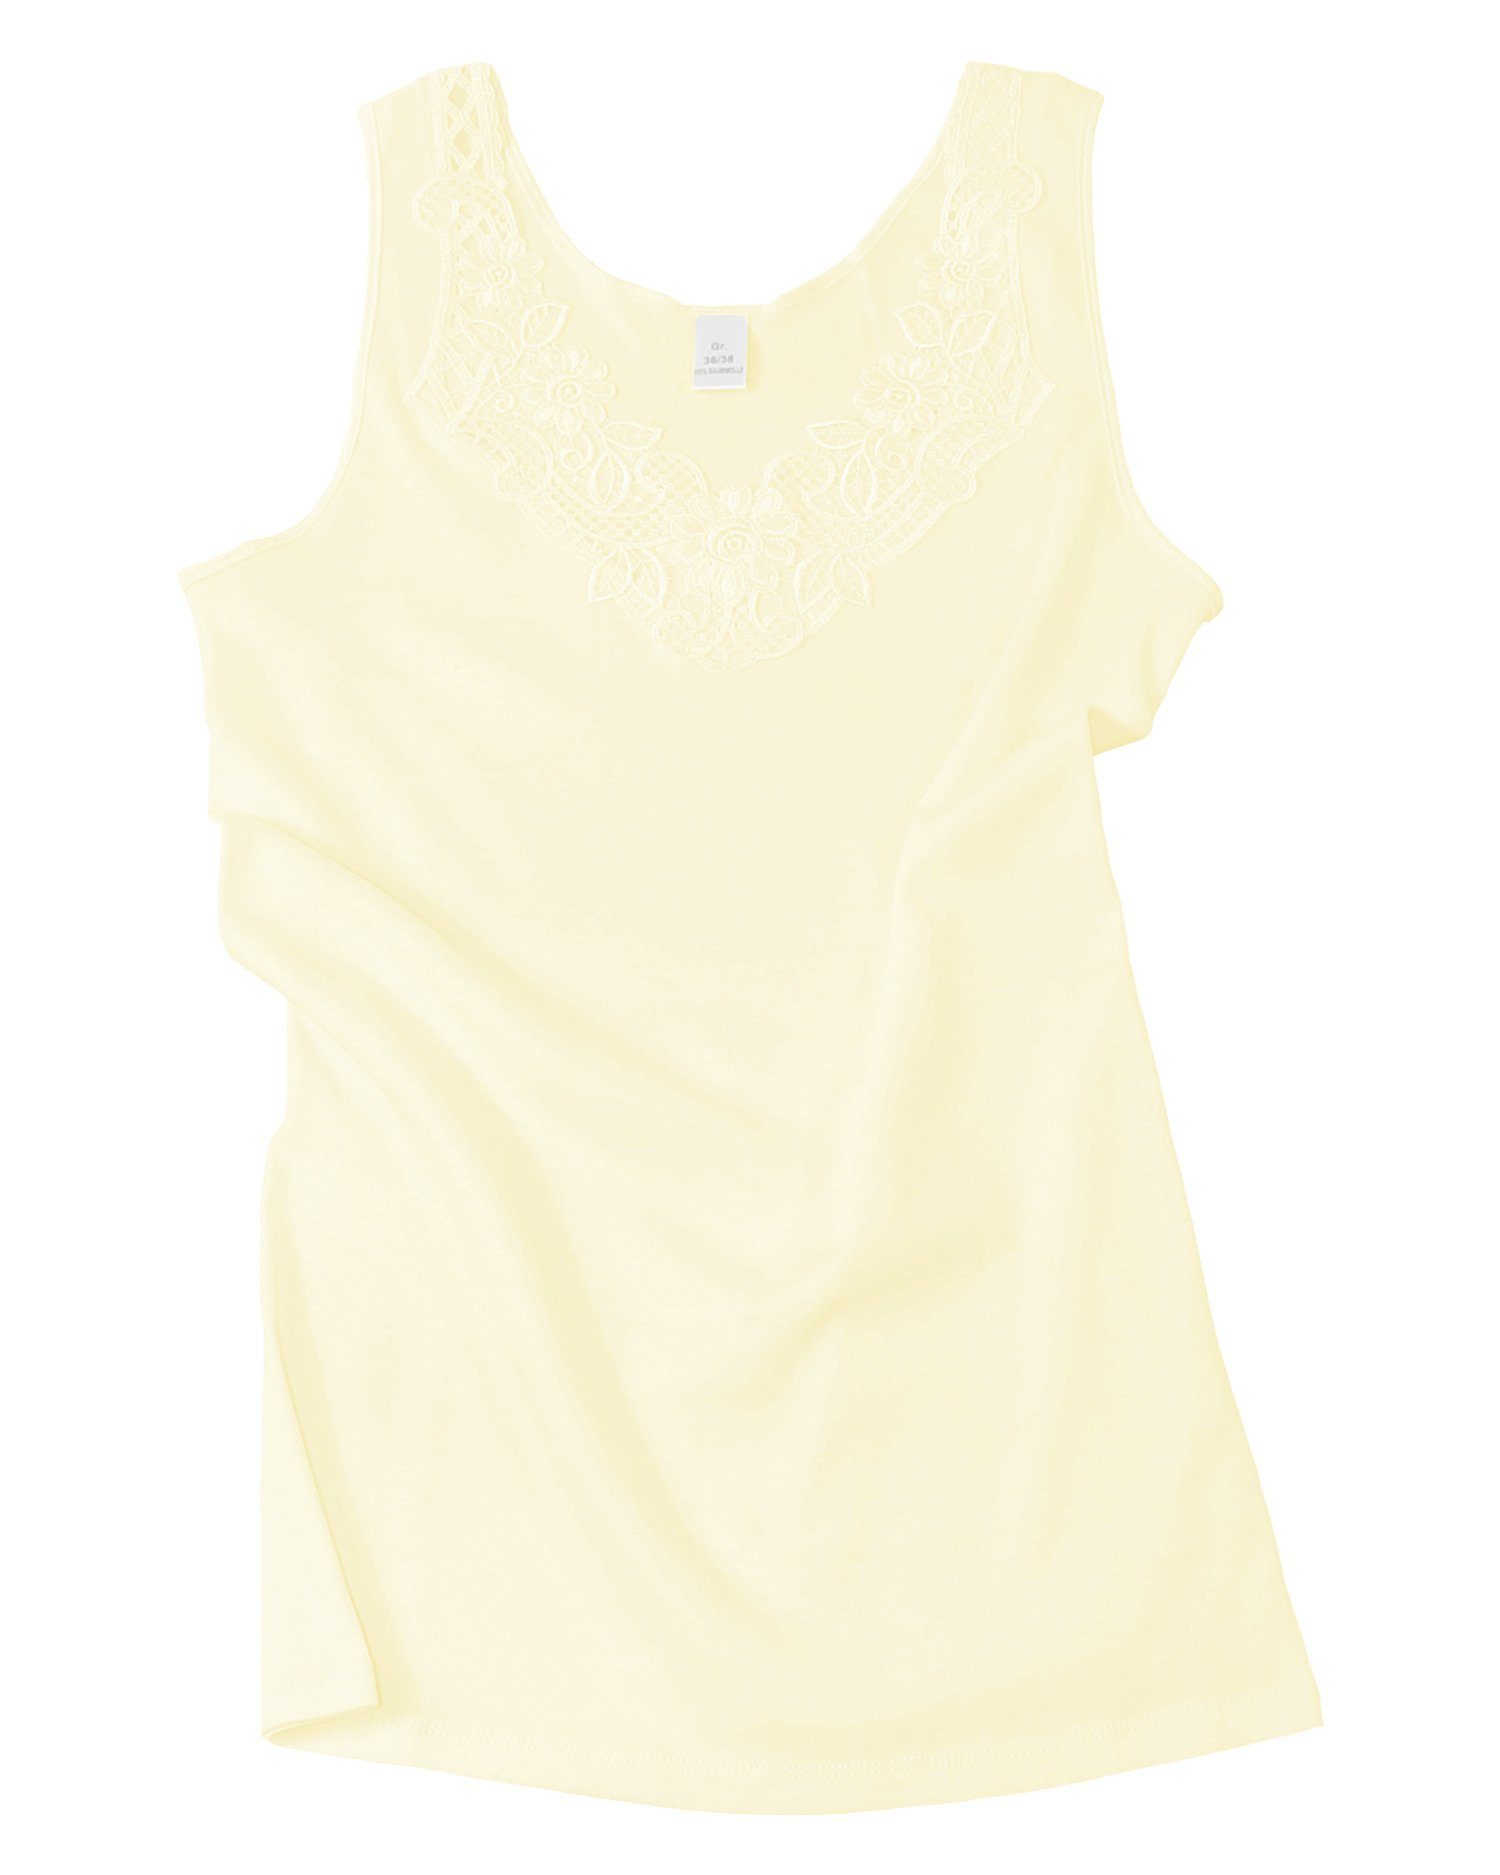 Cotton Prime® mit Unterhemd angenehmer in Spitze Baumwollqualität sekt-gelb